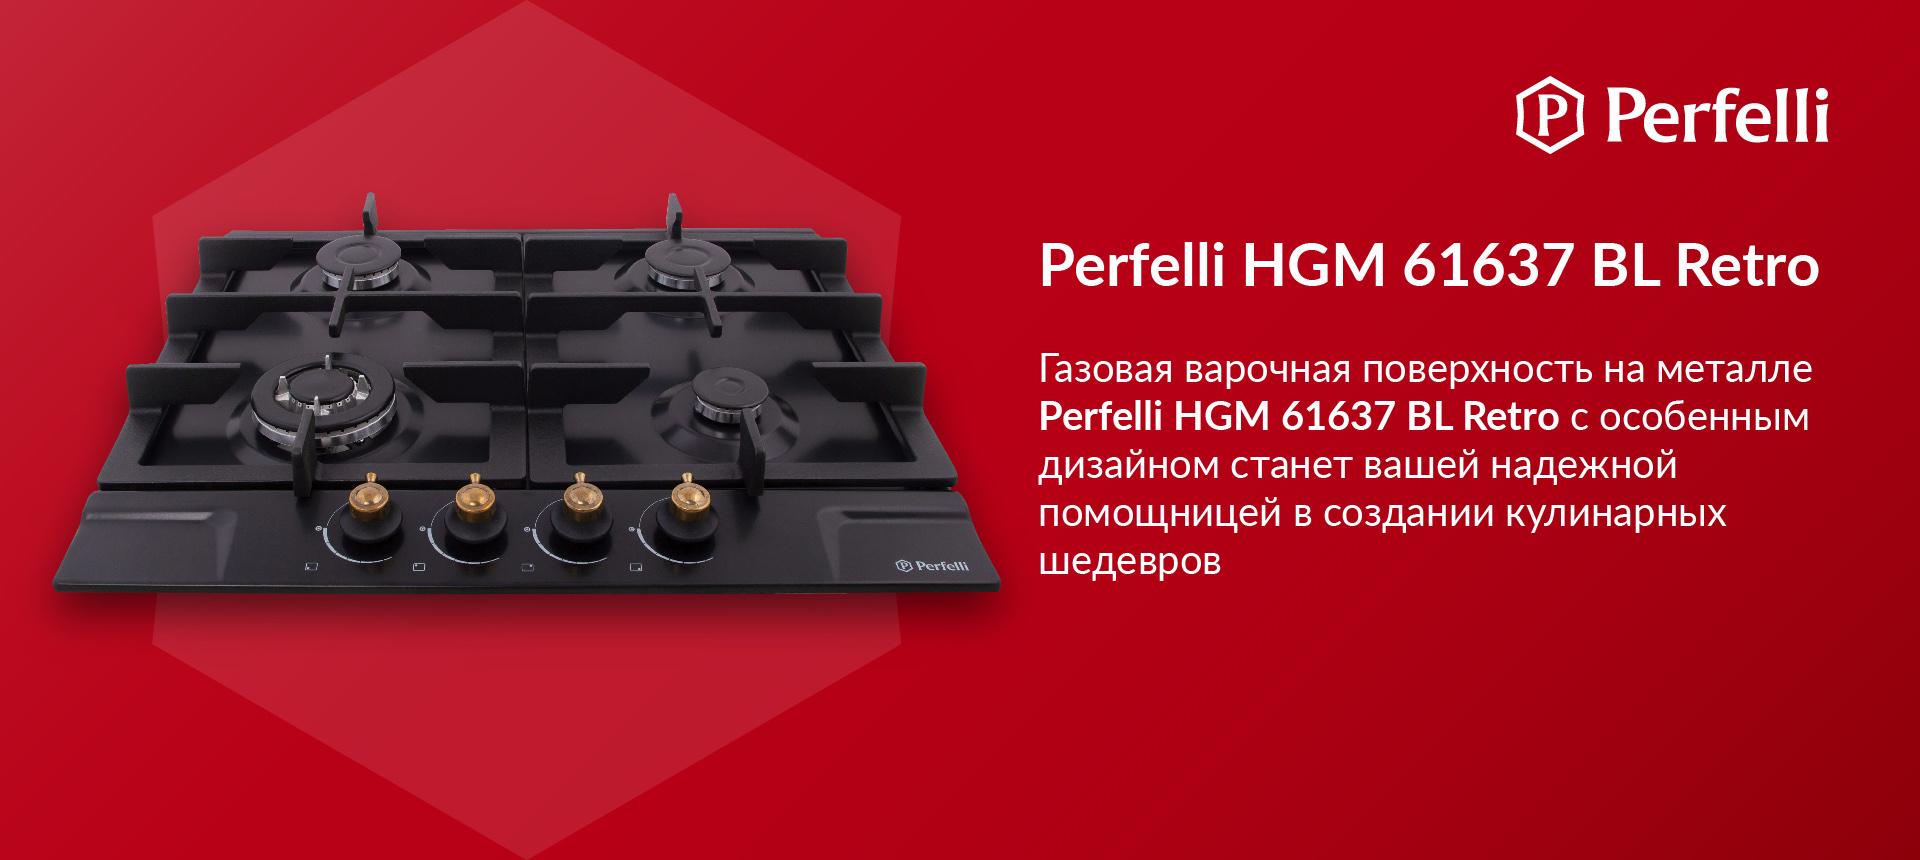 Газовая варочная поверхность на металле Perfelli HGM 61637 BL RETRO с особенным дизайном станет вашей надежной помощницей в создании кулинарных шедевров